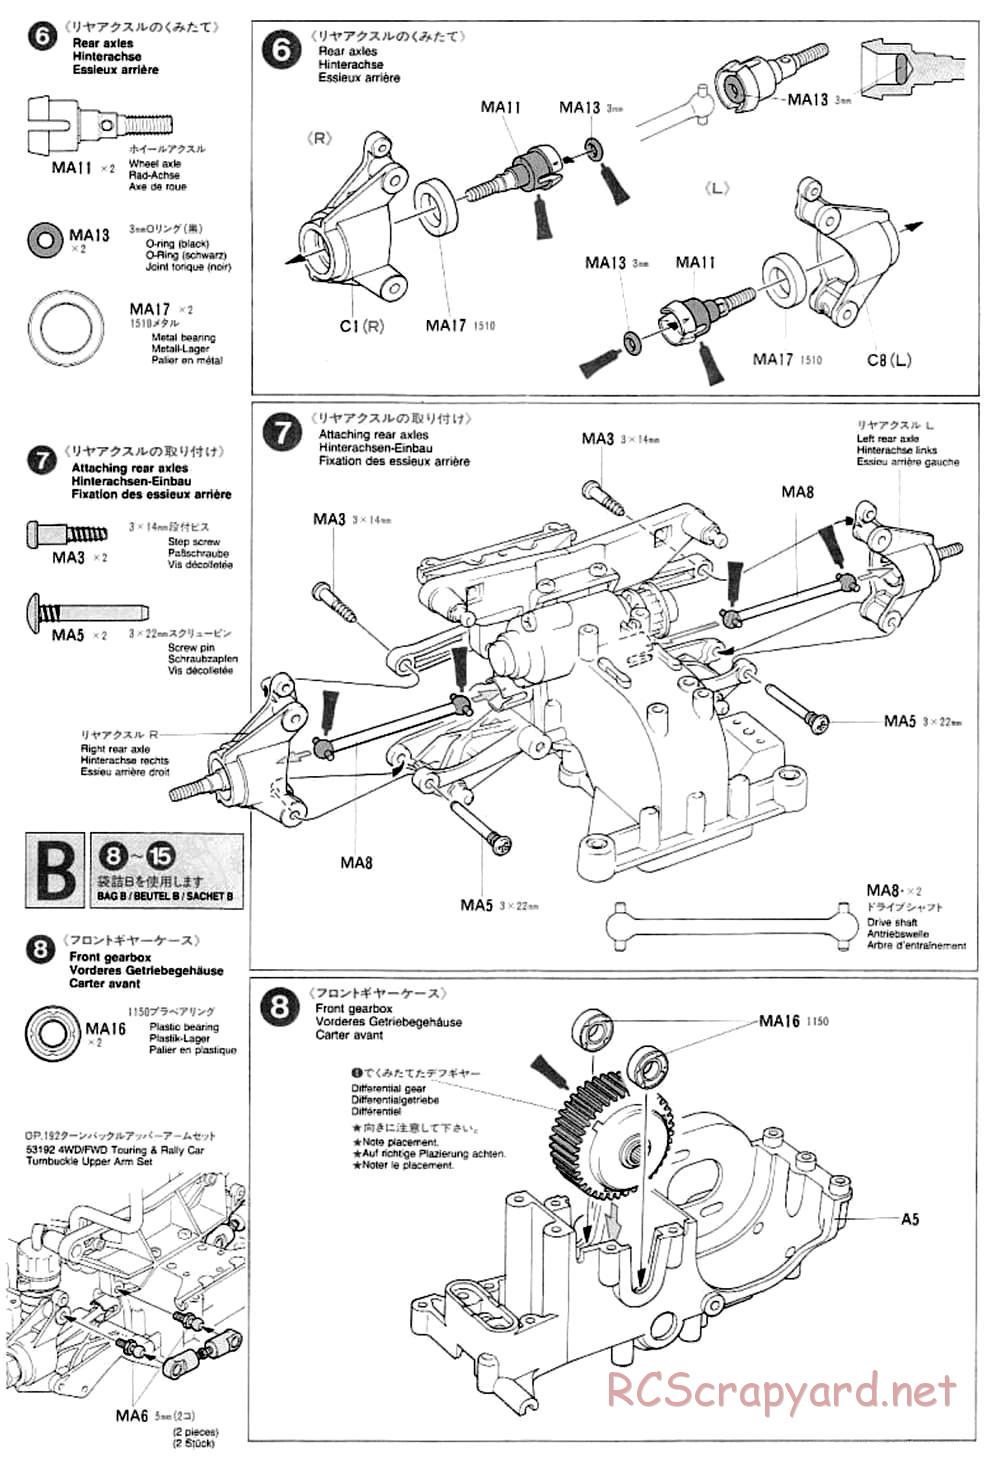 Tamiya - TA-03F Chassis - Manual - Page 6